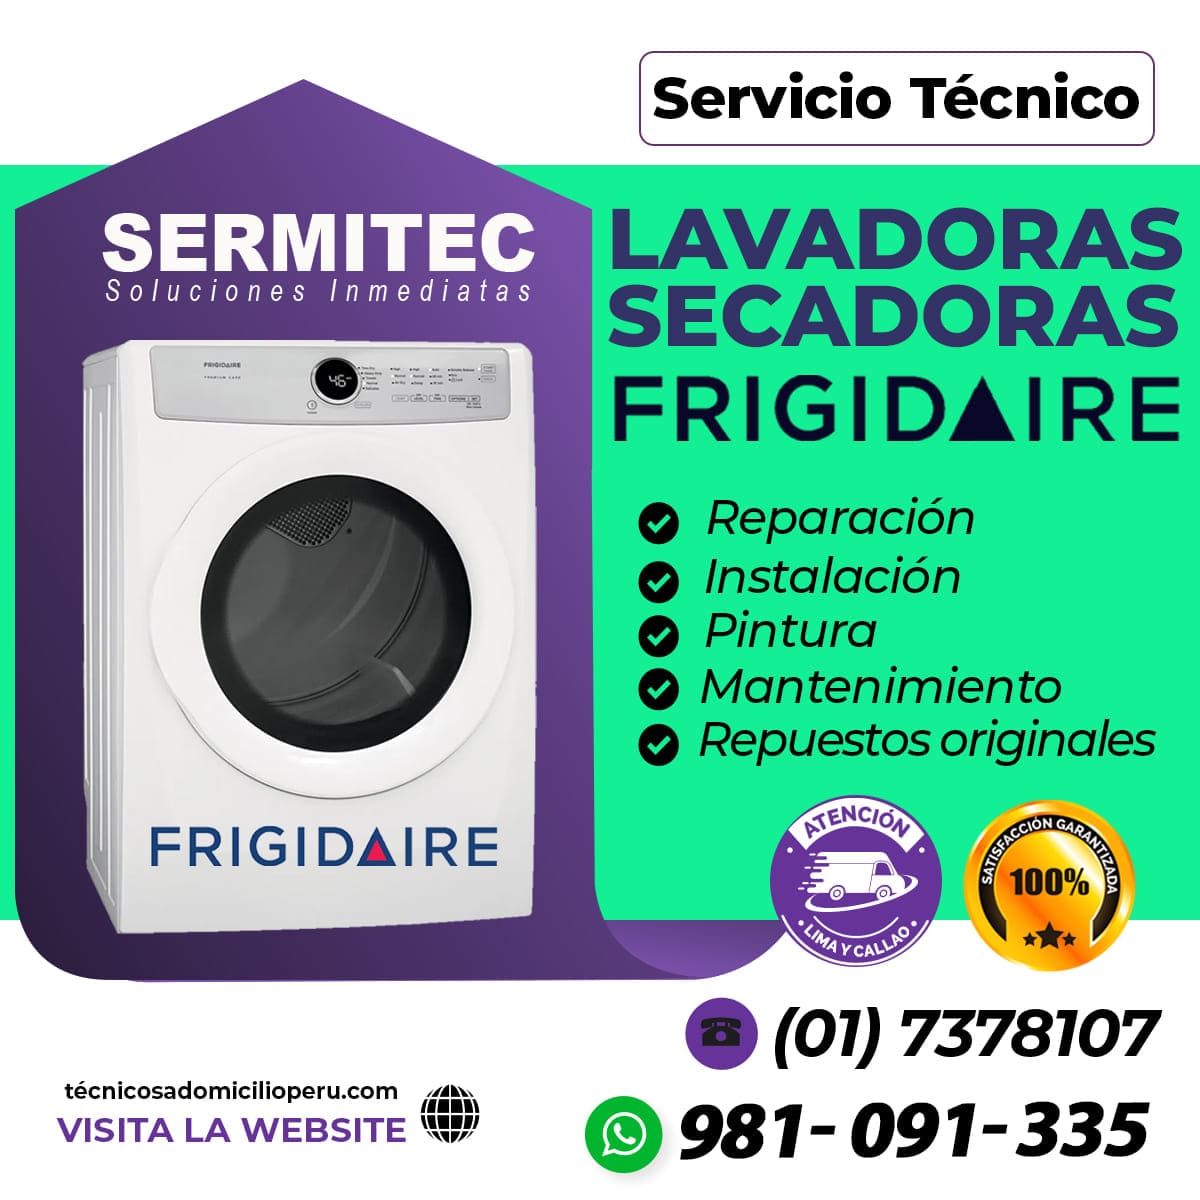 Frigidaire Reparacion de Lavadoras 981091335 Barranco